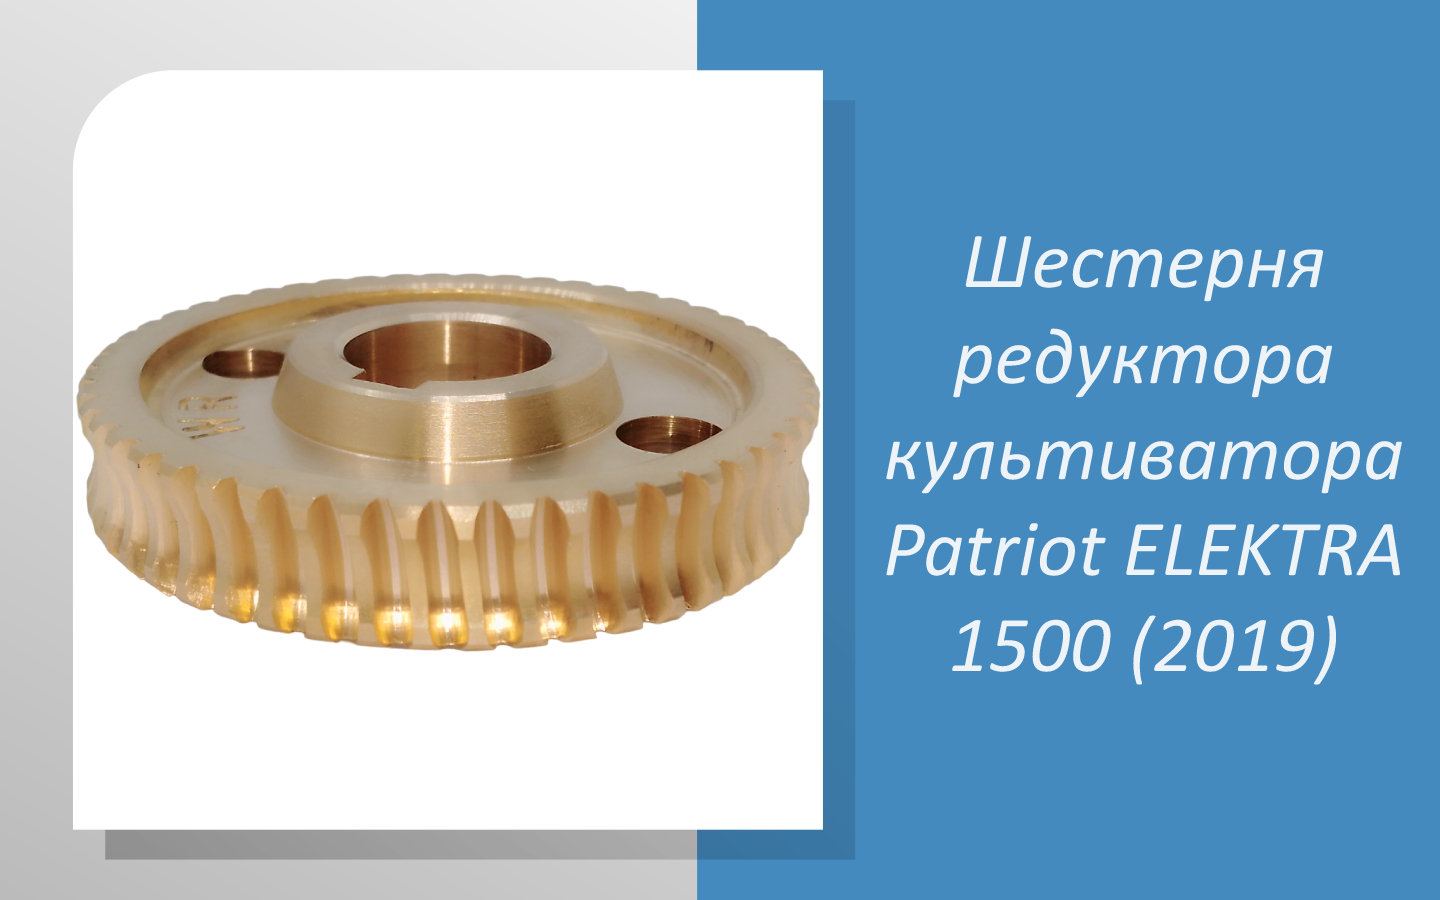 Шестерня редуктора культиватора Patriot ELEKTRA 1500 (2019)